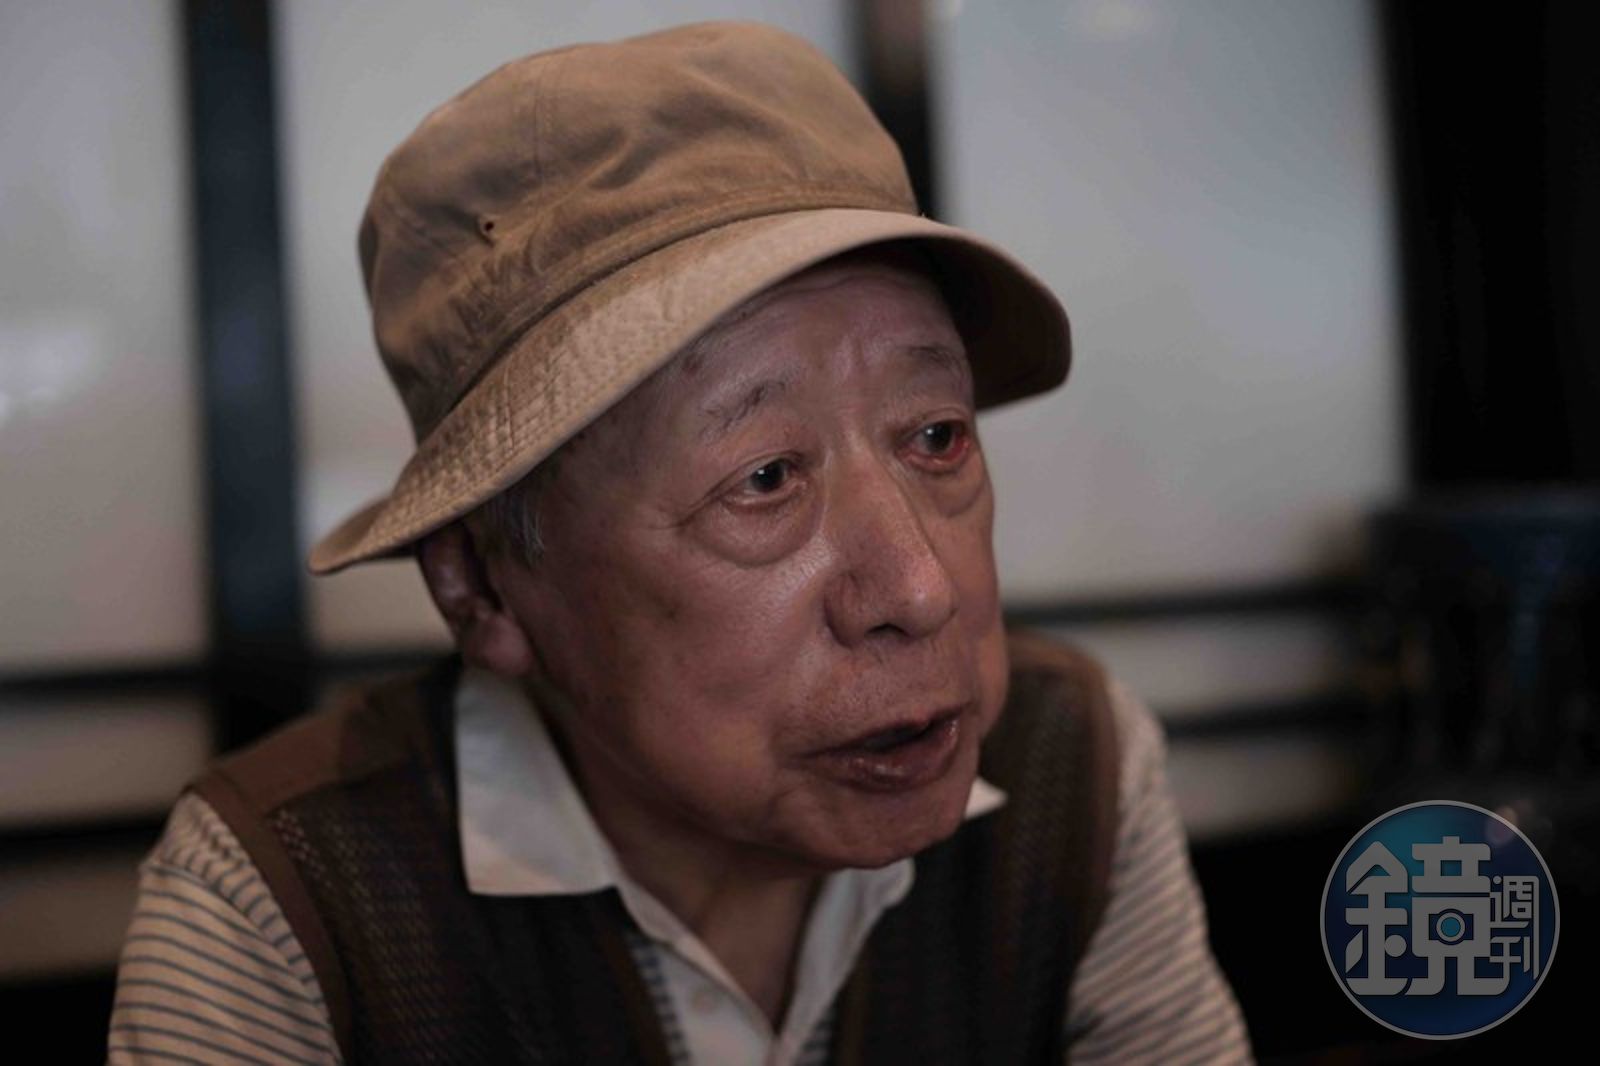 89歲還是勇！世界最高齡AV男優出道30年拍350部片年輕照曝光真的帥- 鏡週刊Mirror Media